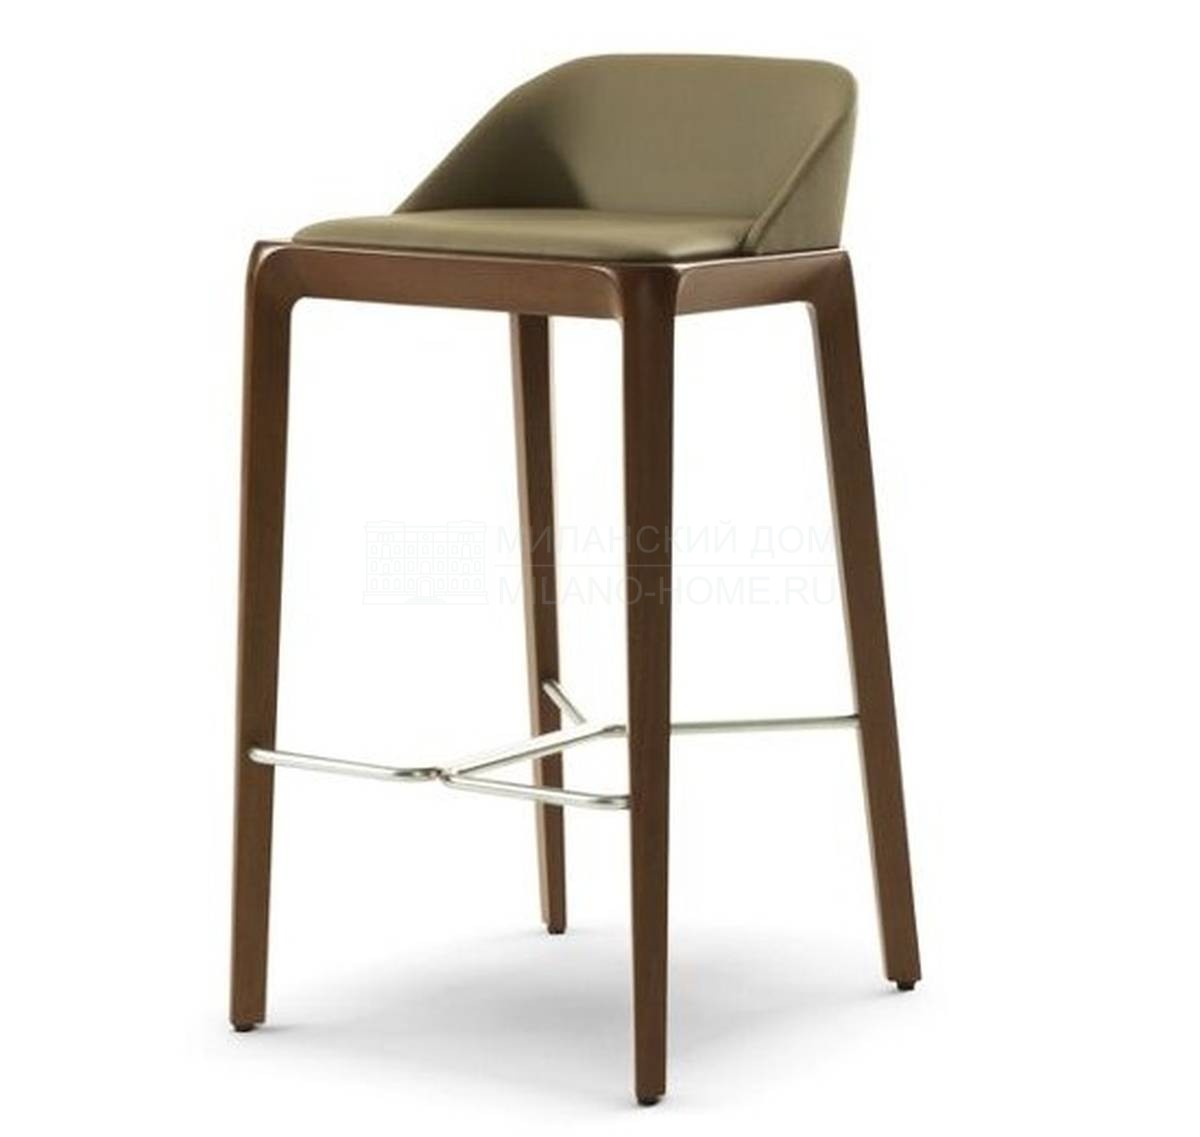 Барный стул Brio bar stool из Франции фабрики ROCHE BOBOIS